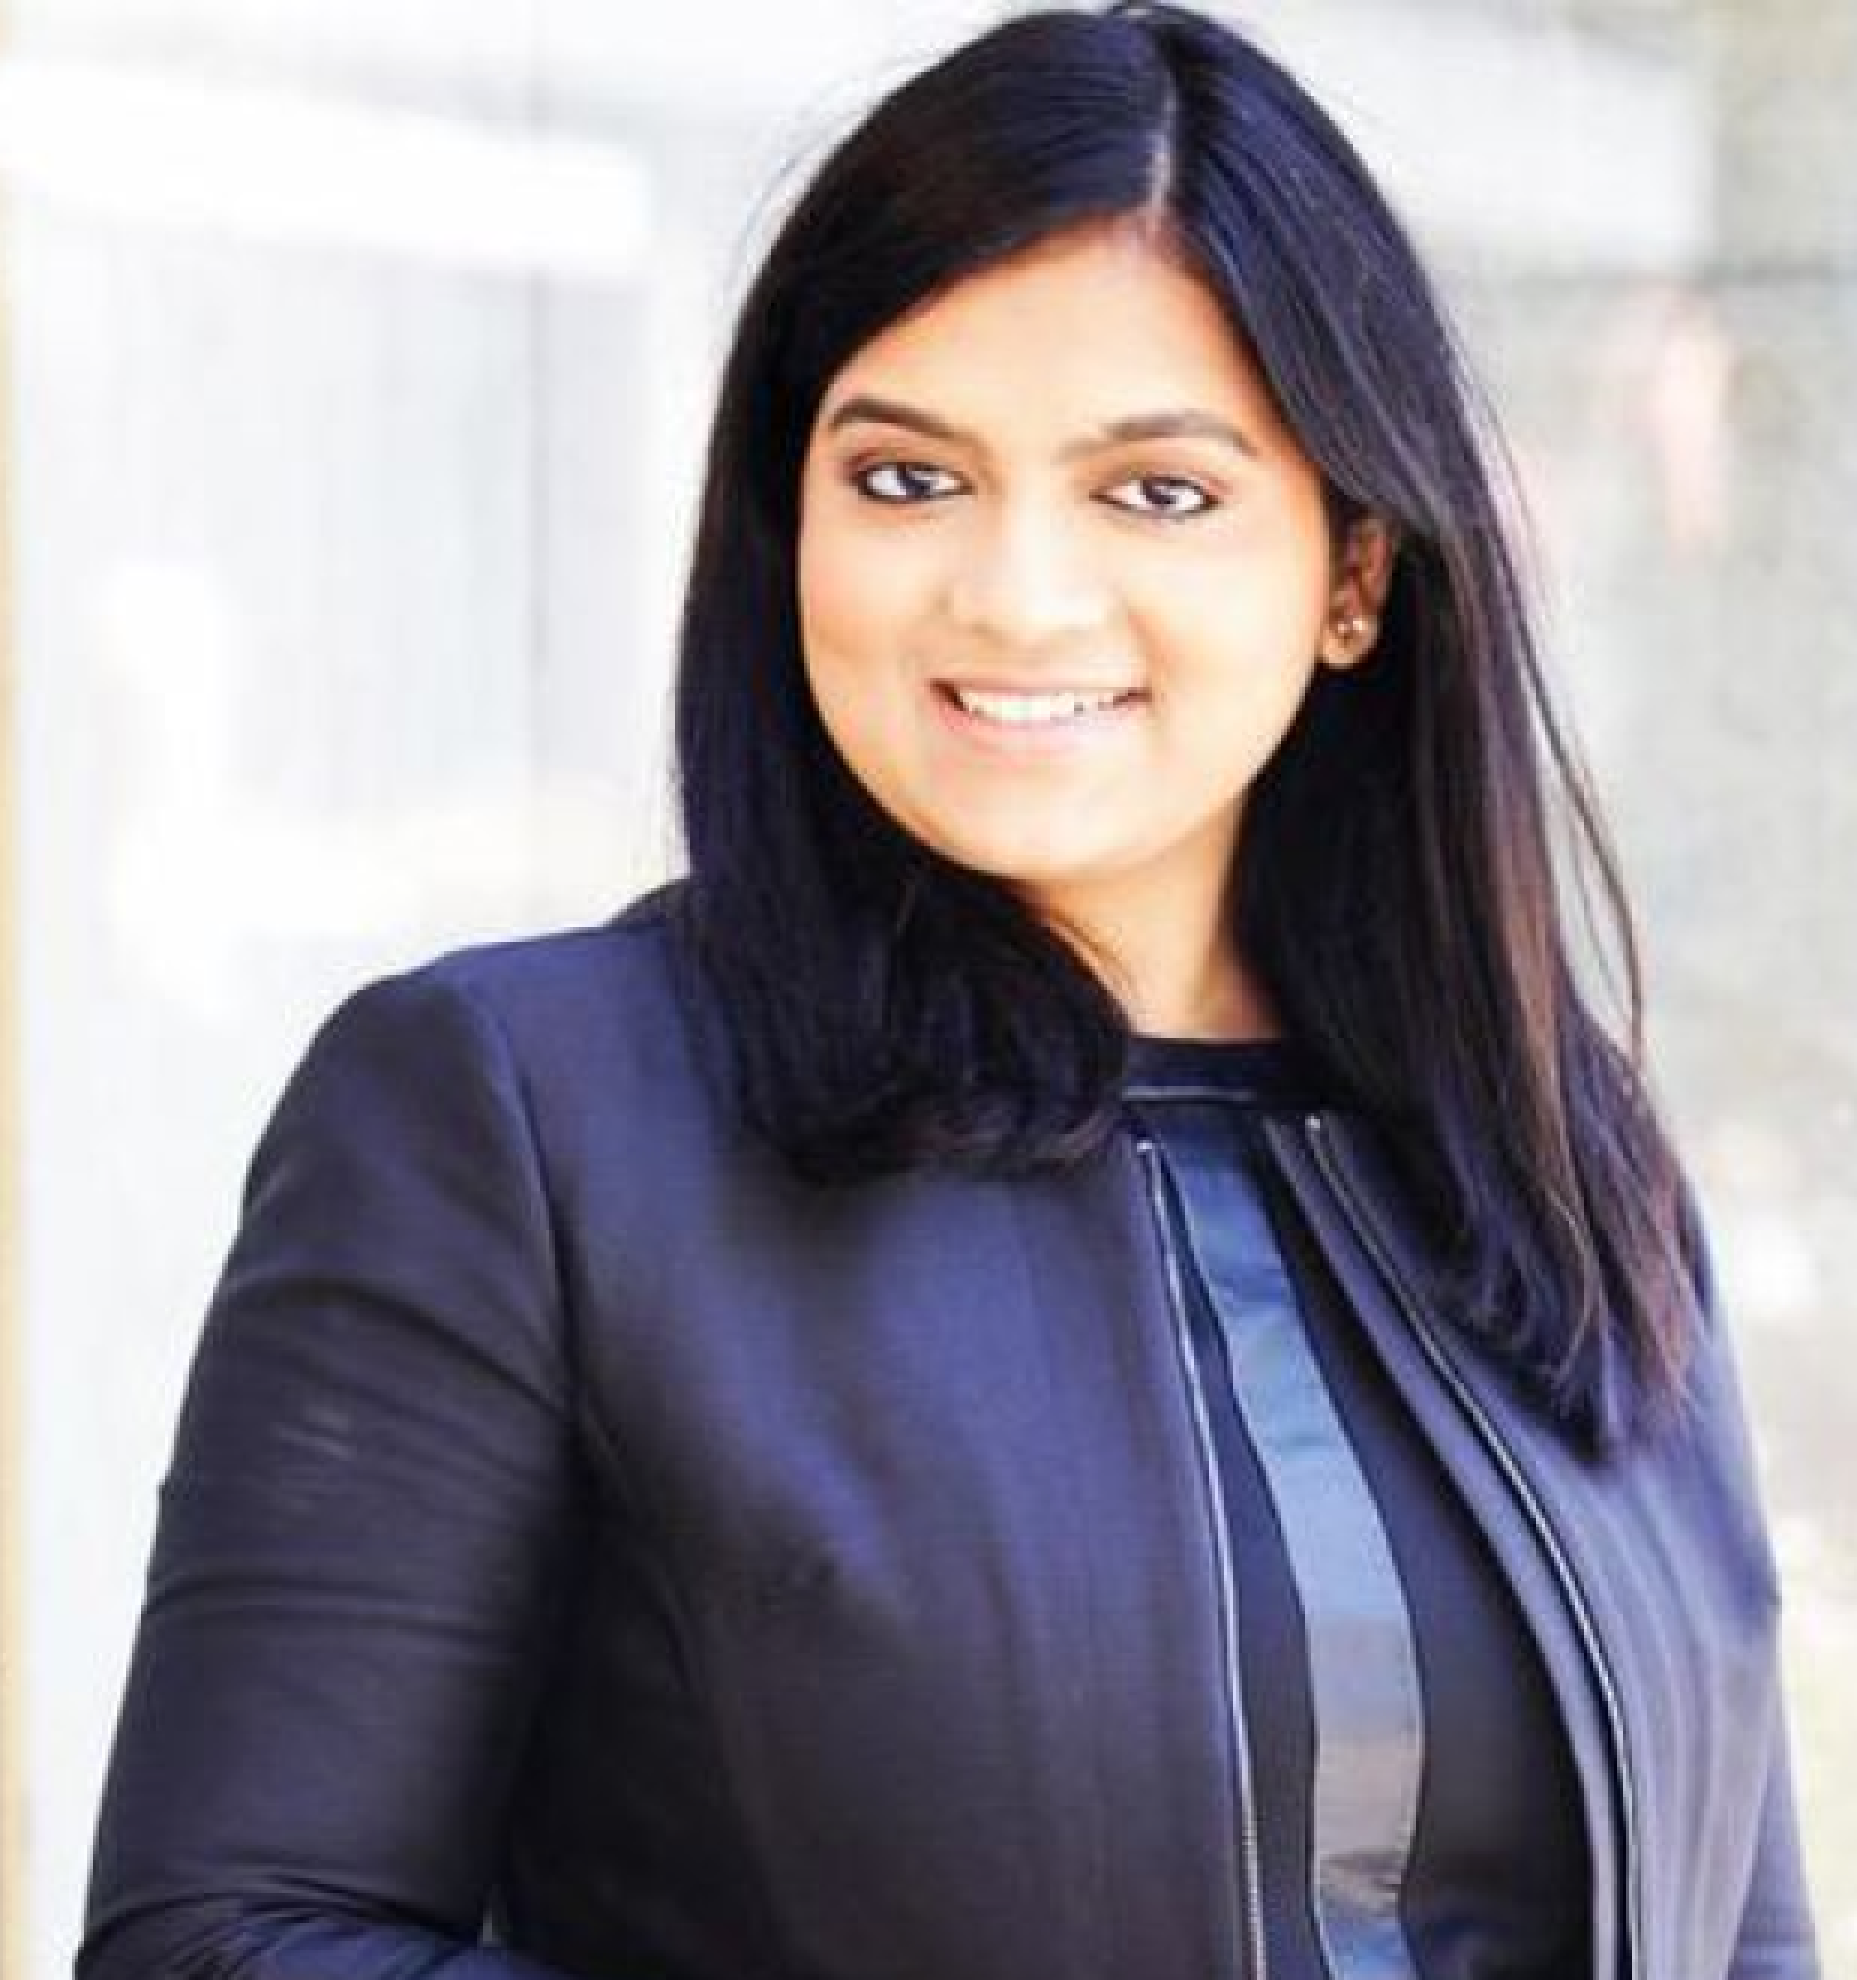 Photo of Purva Gupta, CEO at Lily Ai.